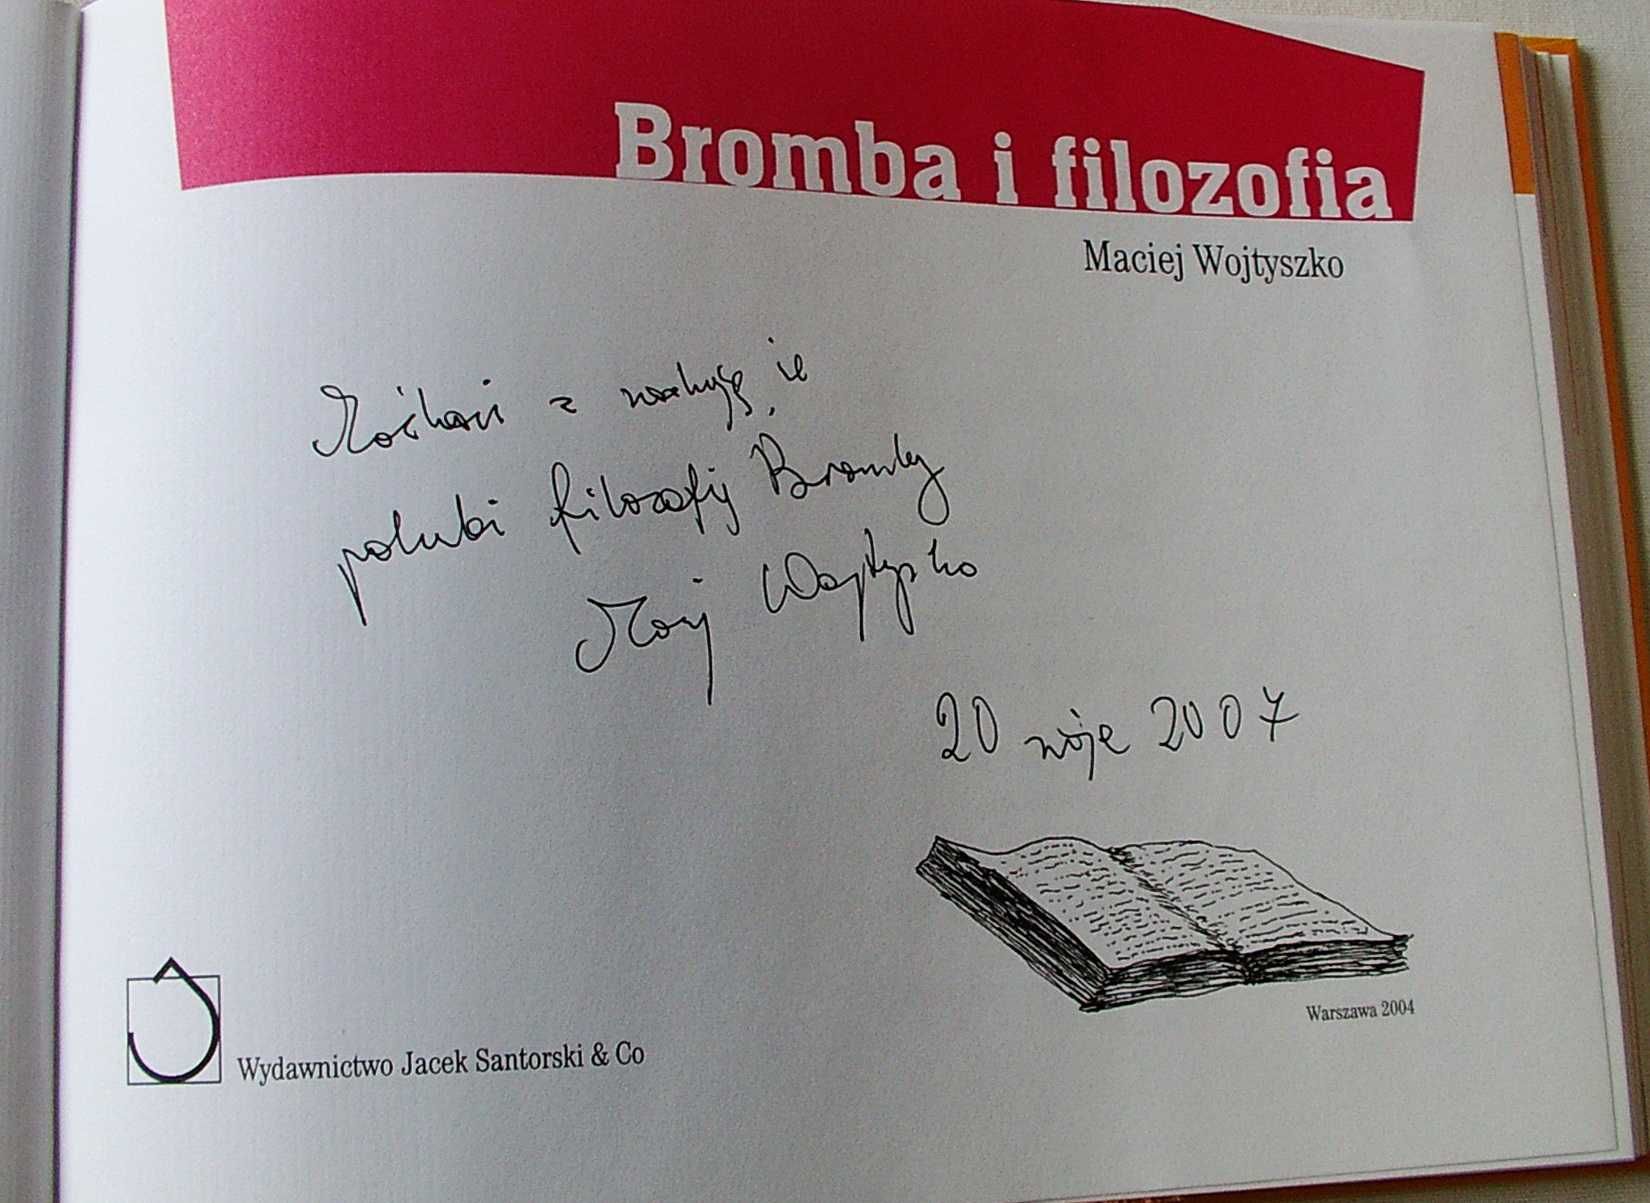 Bromba i Filozofia  - Maciej Wojtyszko AUTOGRAF